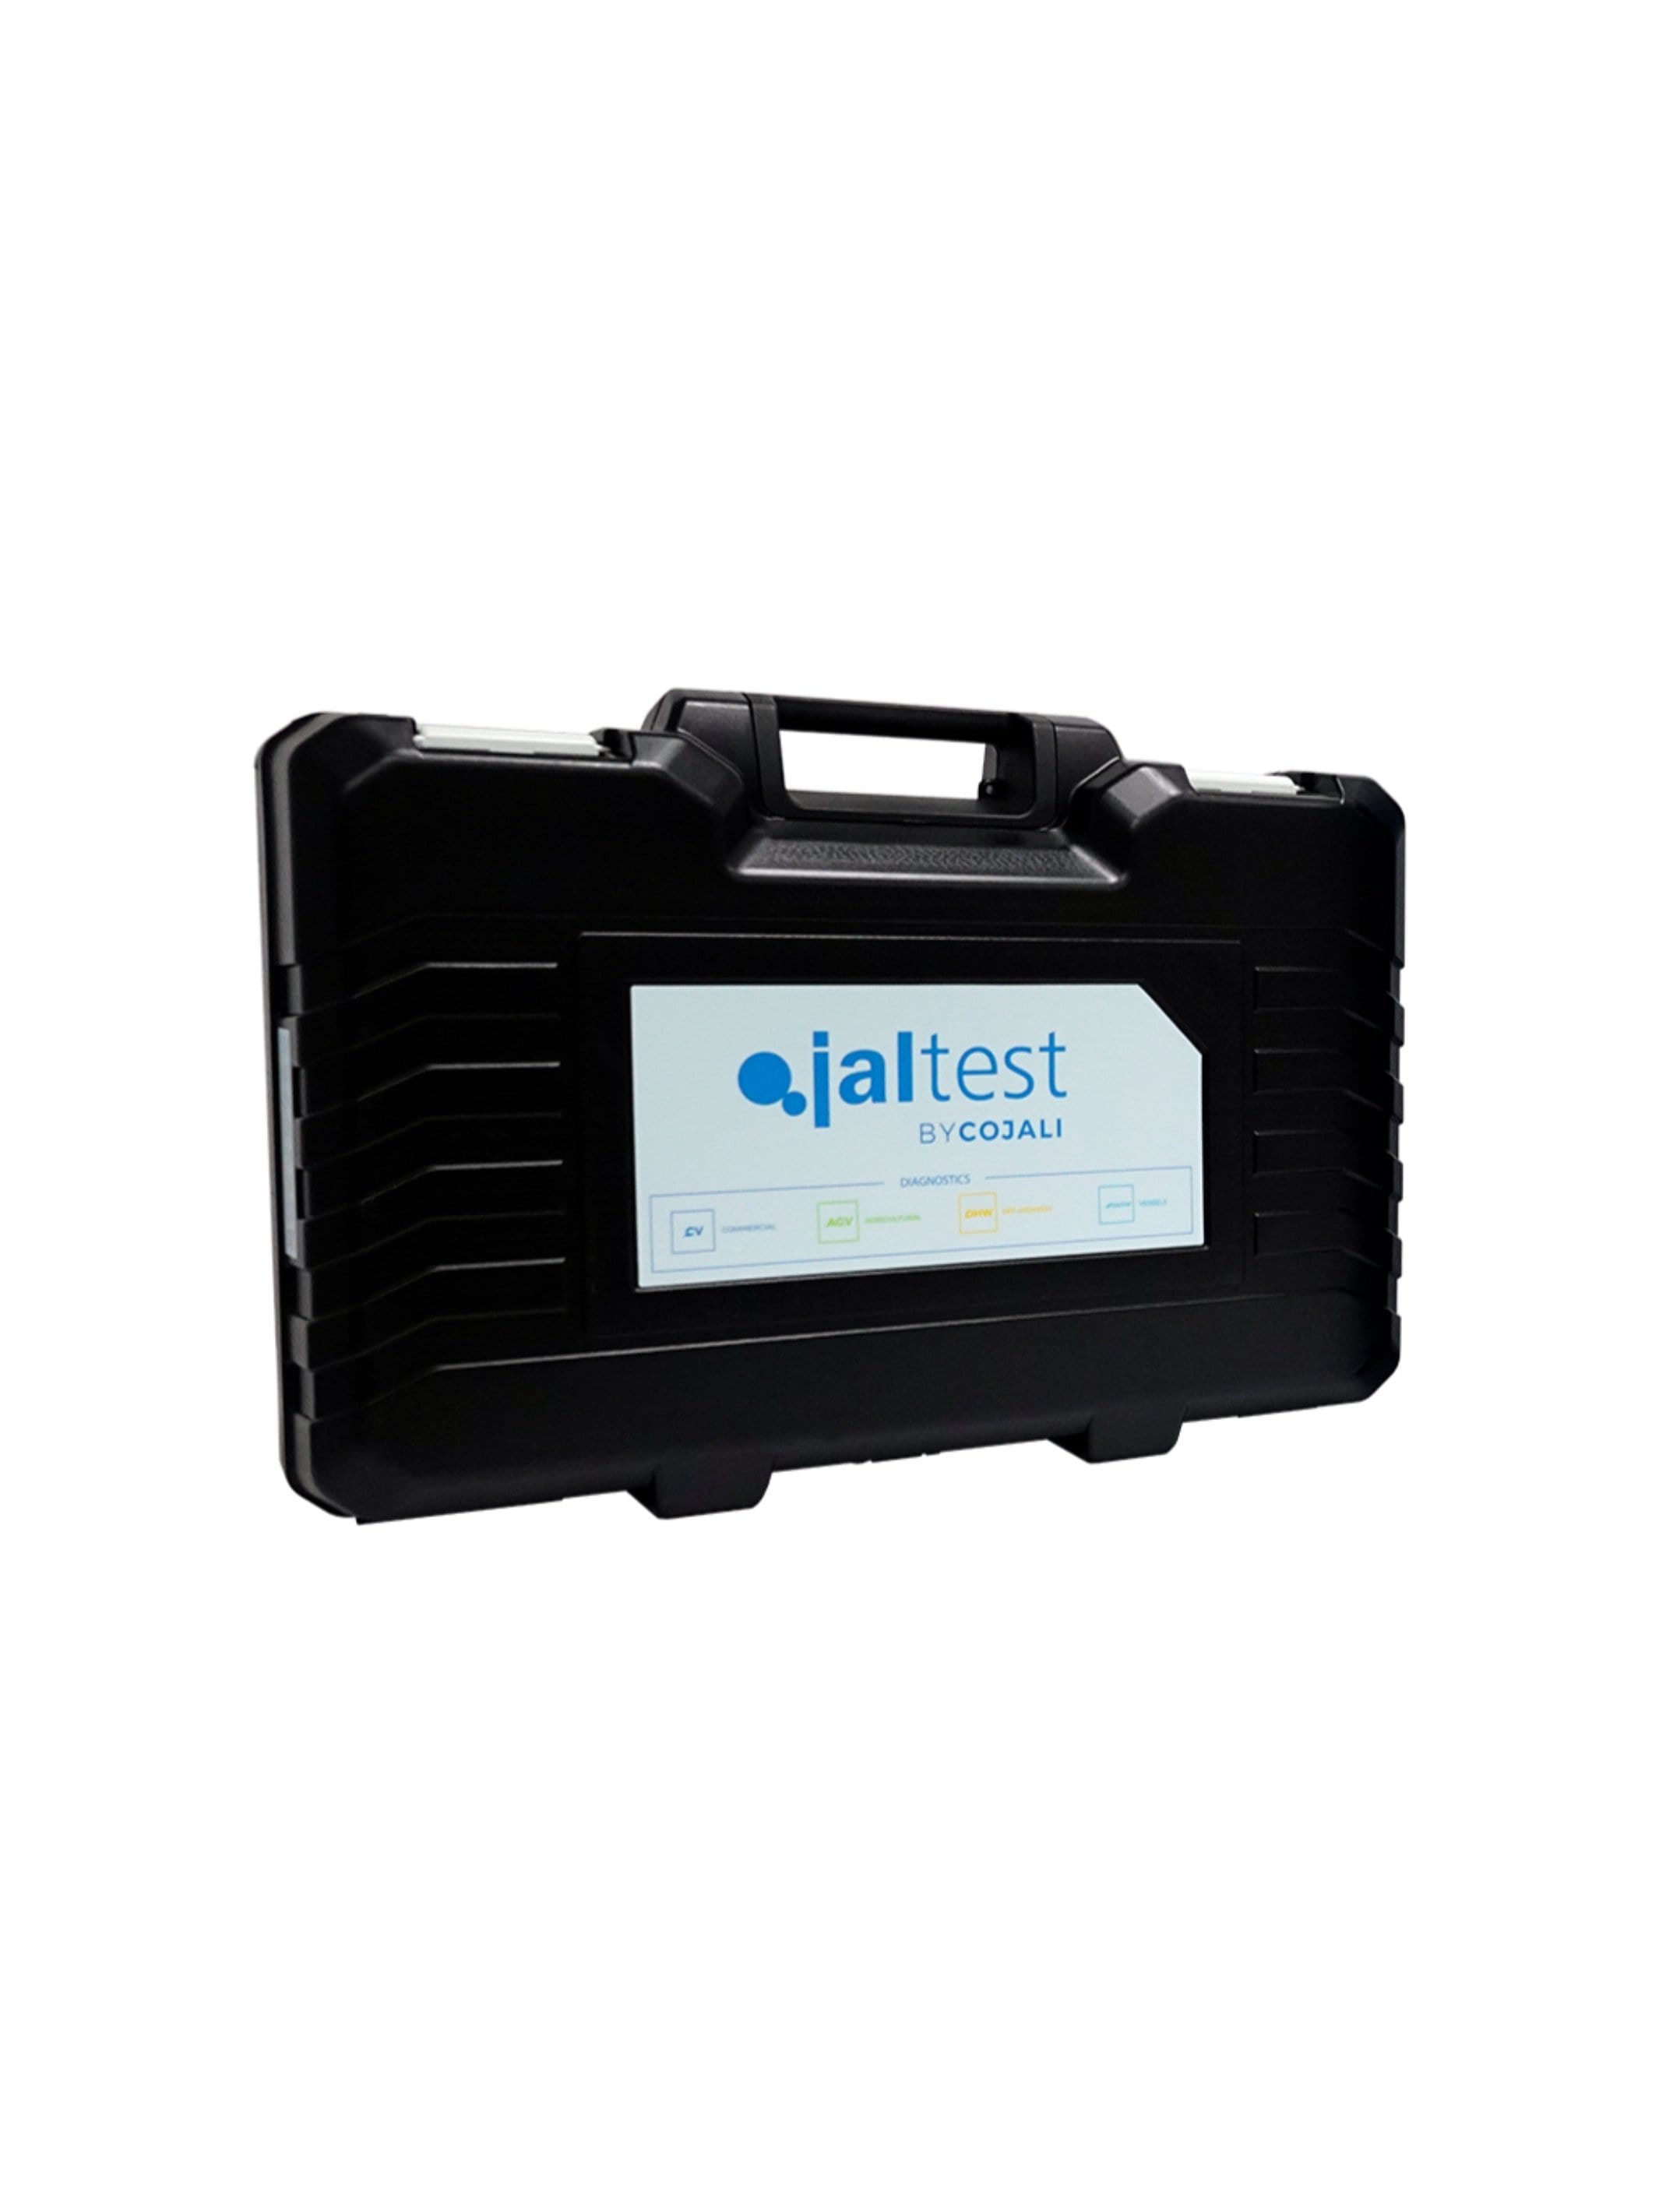 70003015 Transport Hardcase - Jaltest Deluxe Marine Outboard Engine Diagnostic Tool Kit